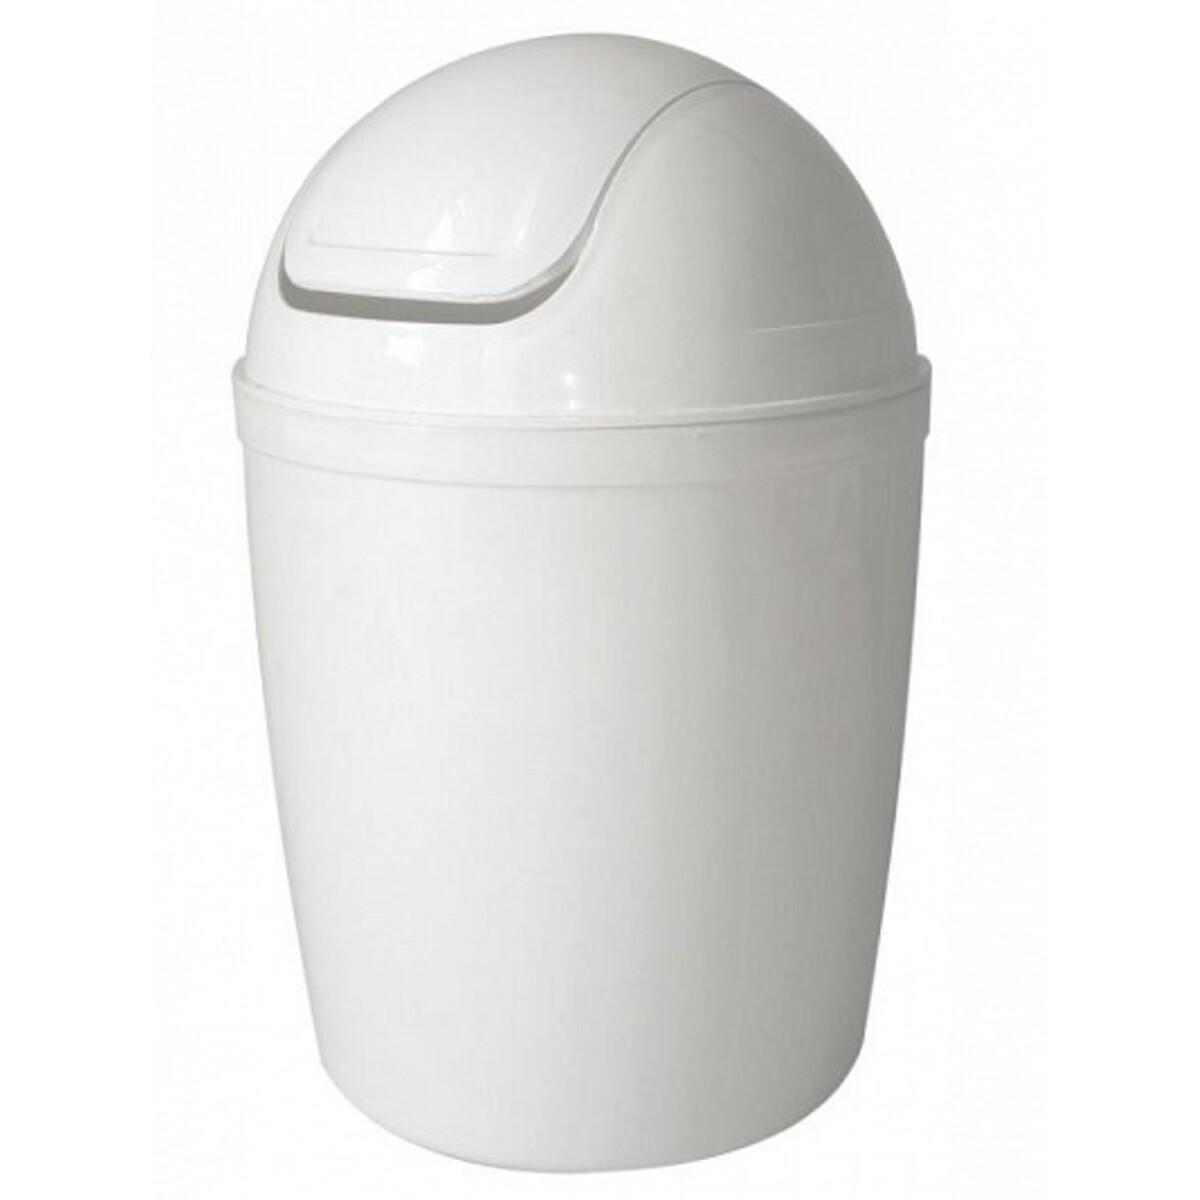 Mini-poubelle - 1.3 L - Différents modèles - Blanc